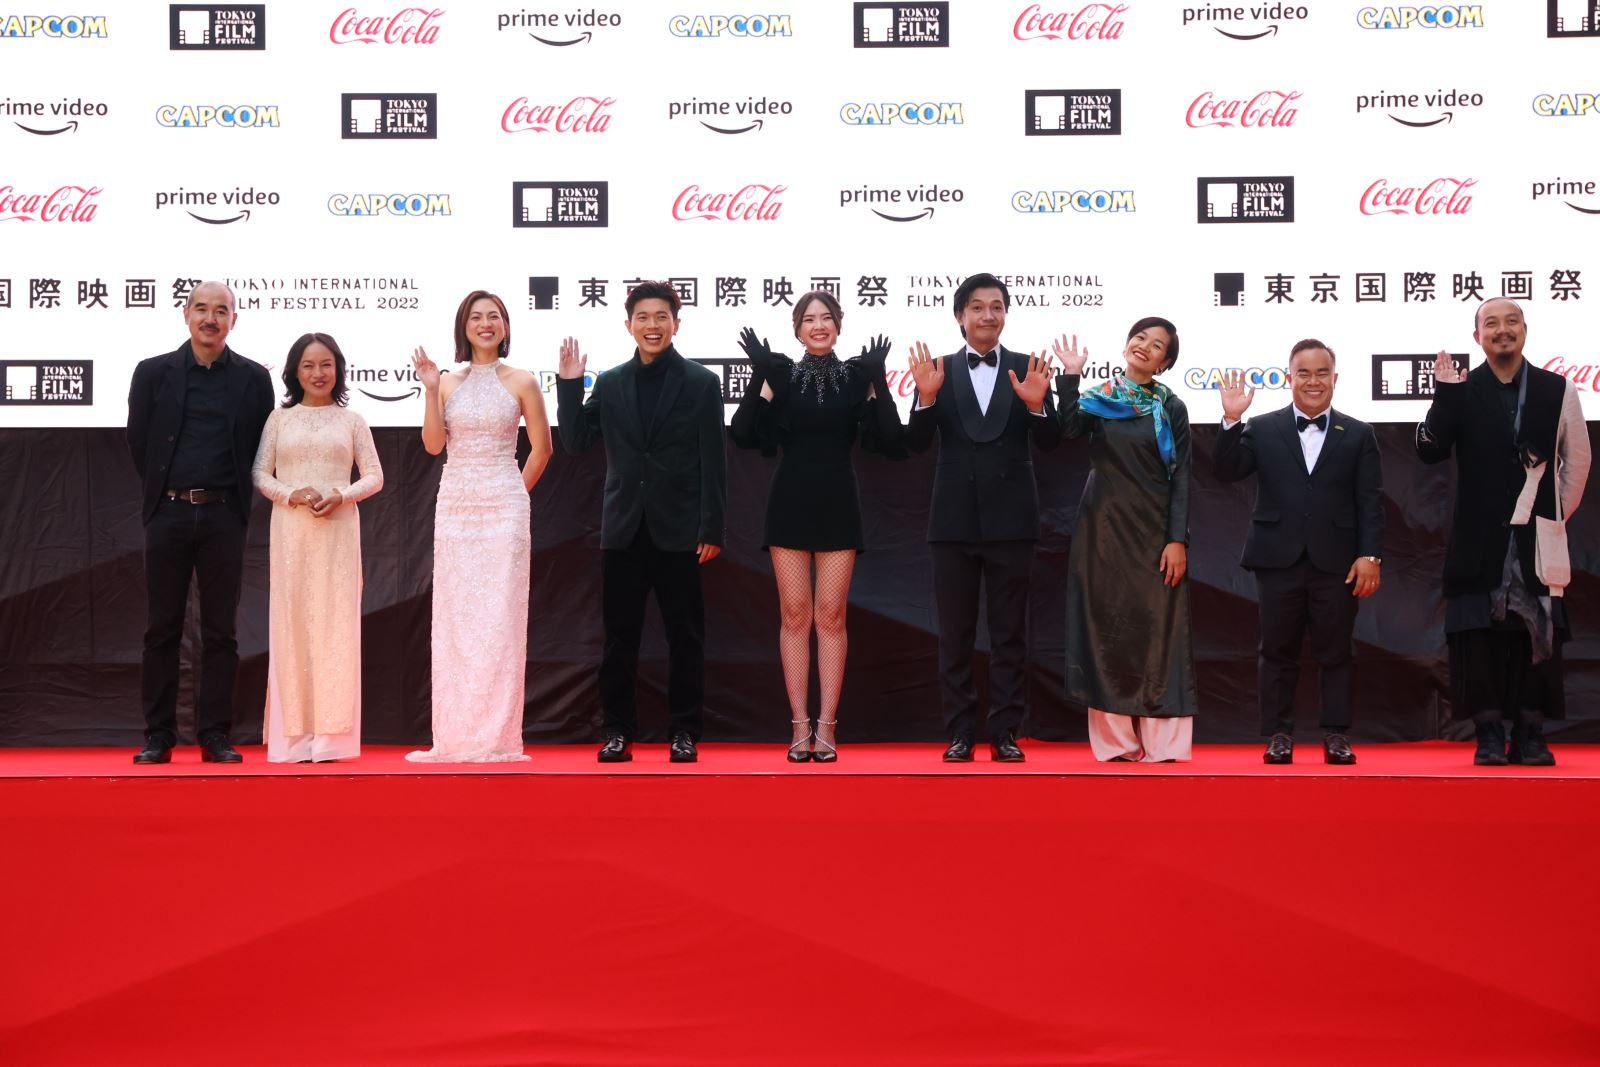  “Tro tàn rực rỡ” được chào đón tại Liên hoan phim quốc tế Tokyo